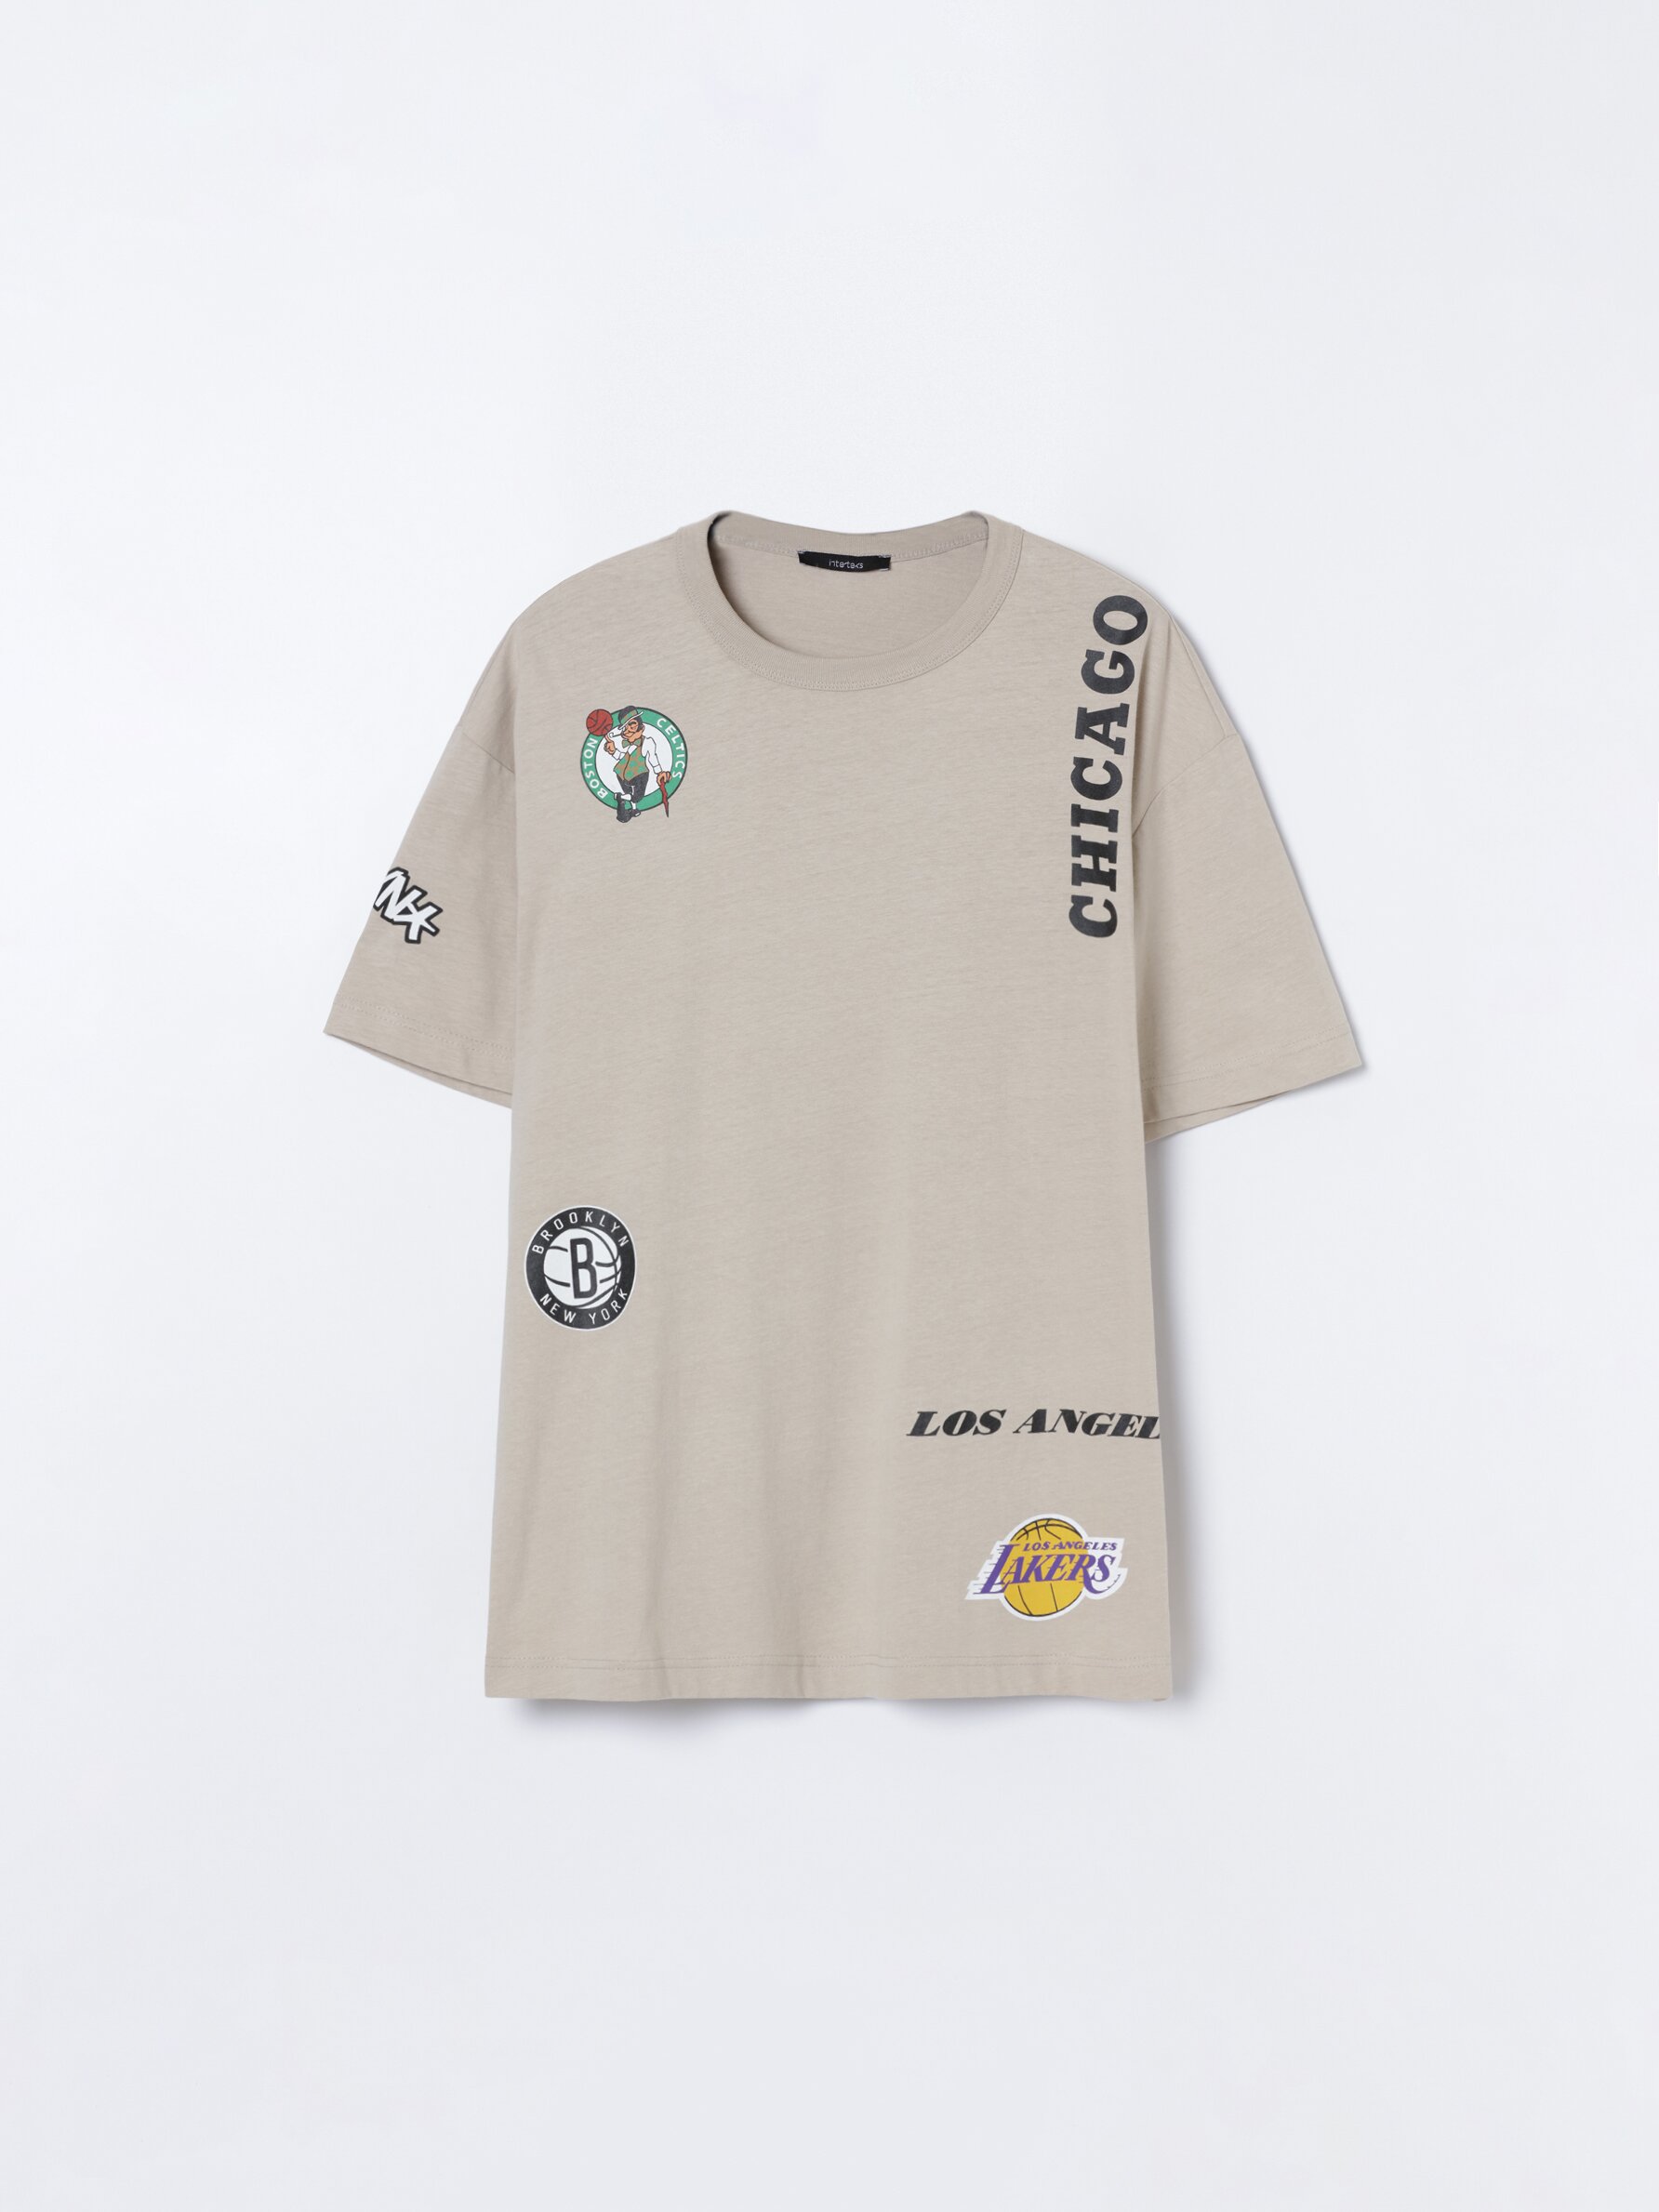 orden Burlas Por separado Camiseta estampada NBA - Camisetas - ROPA - Hombre - | Lefties Mexico